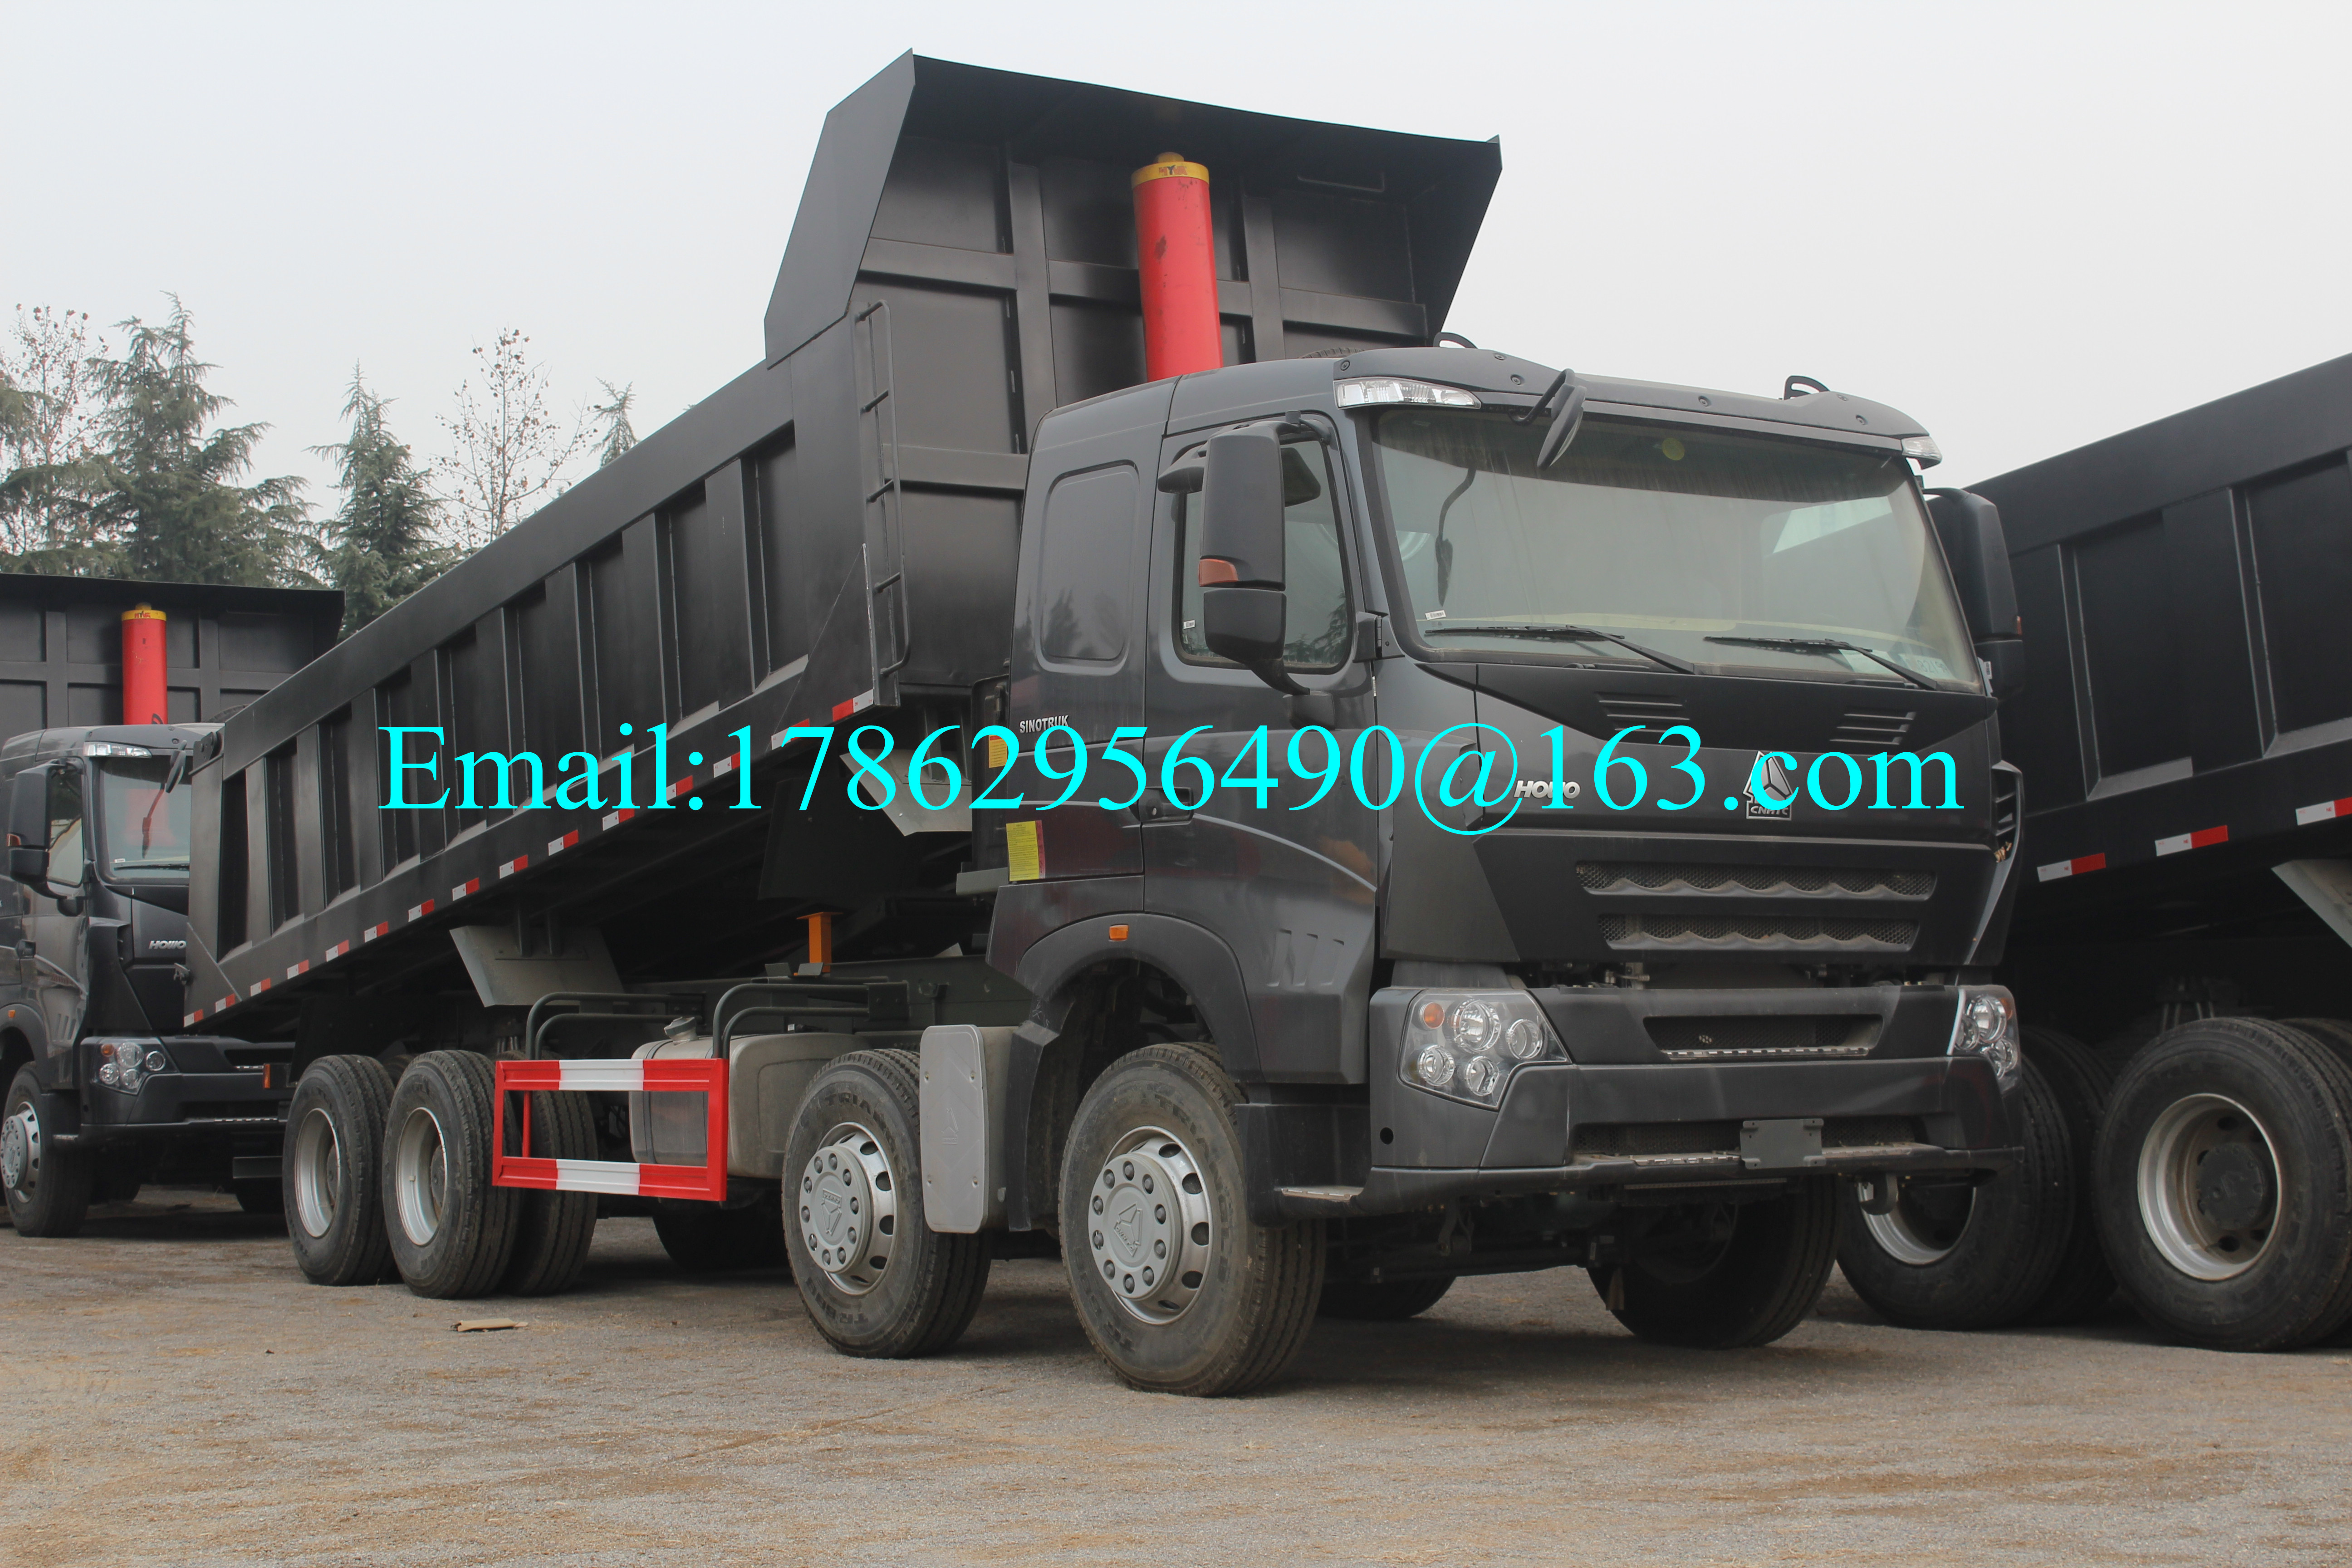 Black 371 HP 8x4 Tugas Berat Dump Truck Dengan ZF8118 Kemudi Gear Box Dan HW76 Cab